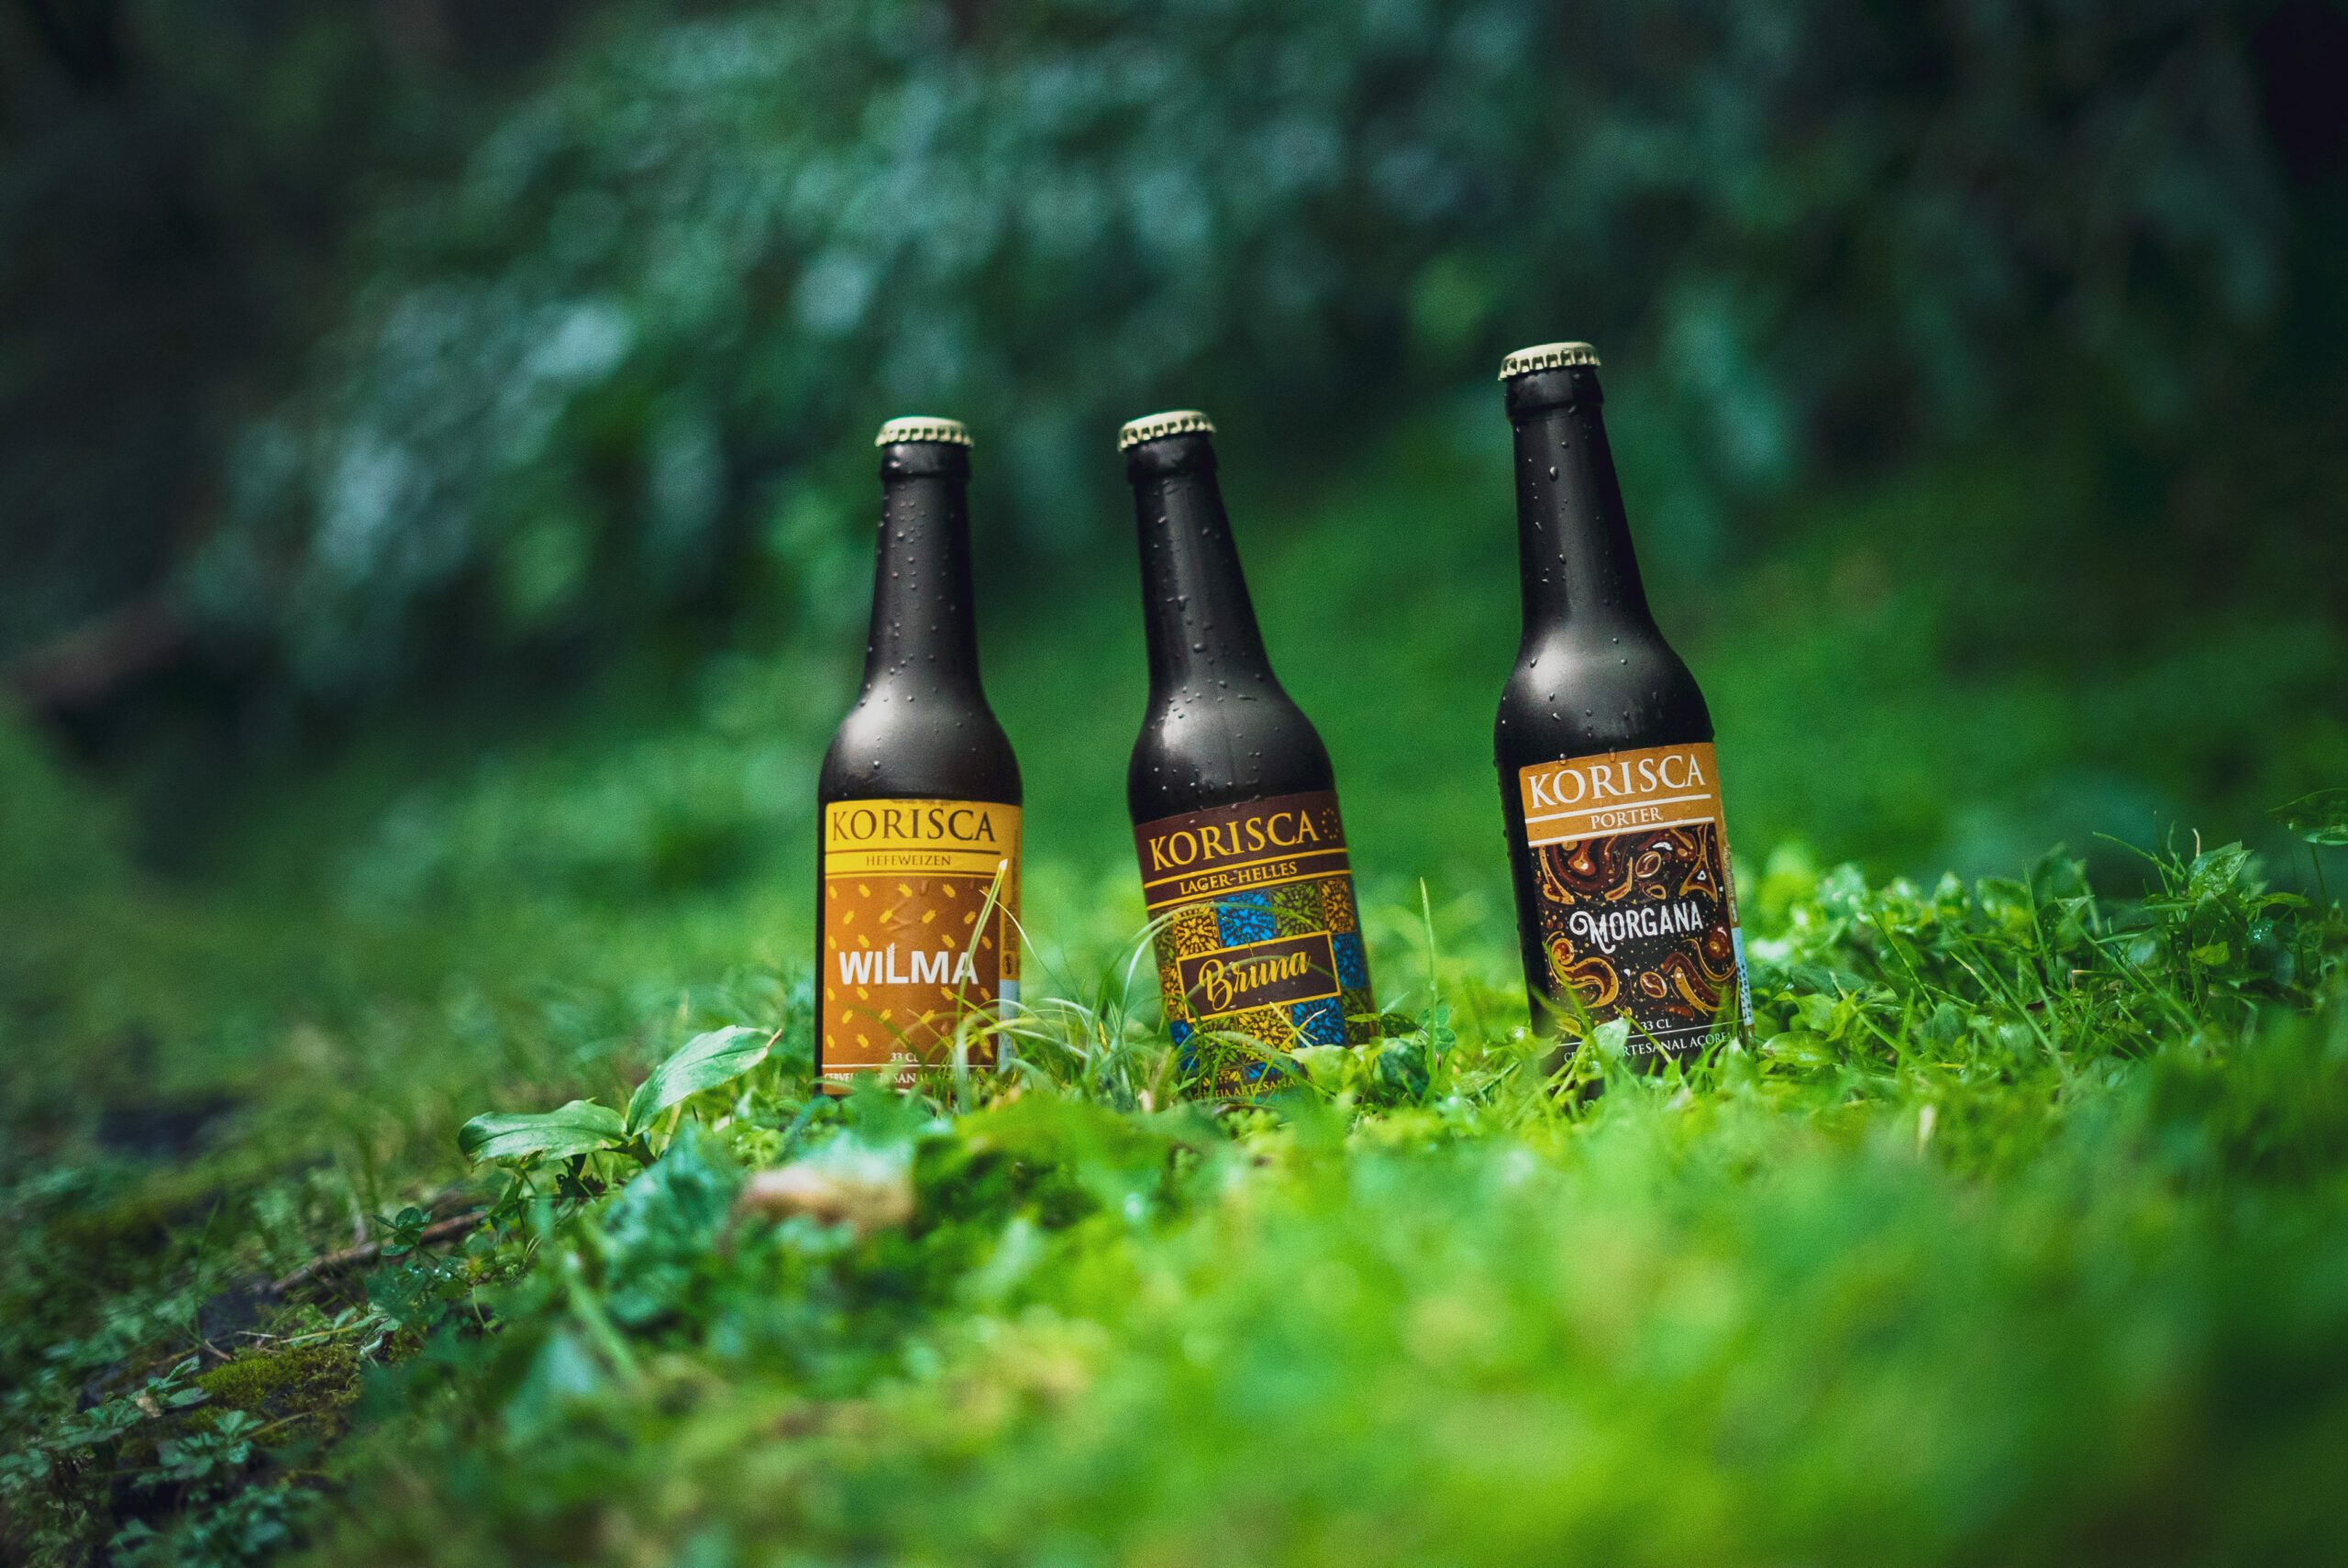 Três cervejas artesanais Korisca, a Wilma (Hefeweizen), a Bruna (Lager-Helles) e a Morgana (Porter), no chão com folhas verdes, e ao fundo vegetação verde, Sete Cidades, Ponta Delgada, São Miguel, Açores.